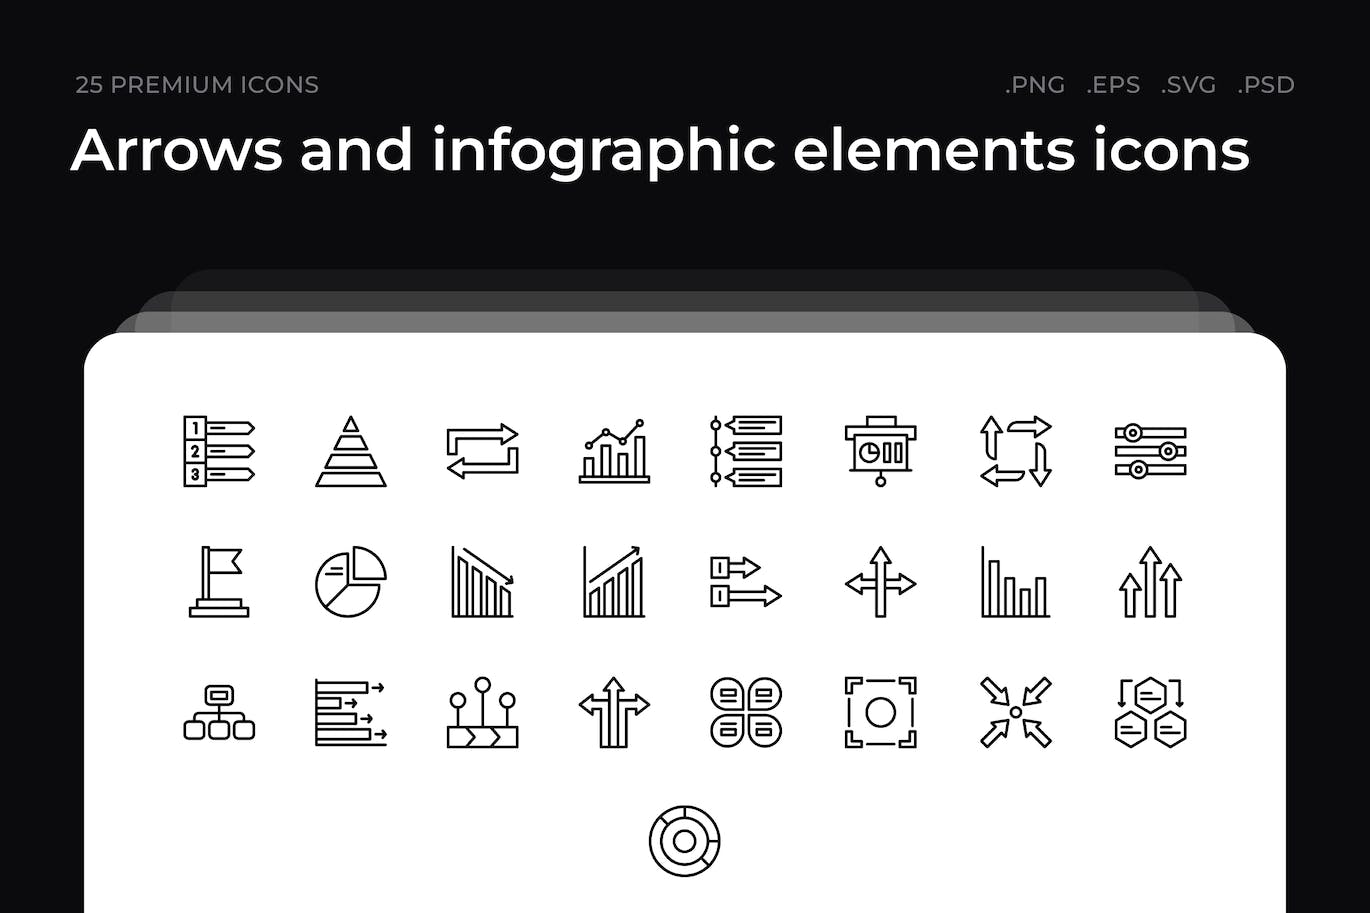 25枚箭头和信息图形元素主题简约线条矢量图标 Arrows and infographic elements icons 图标素材 第1张